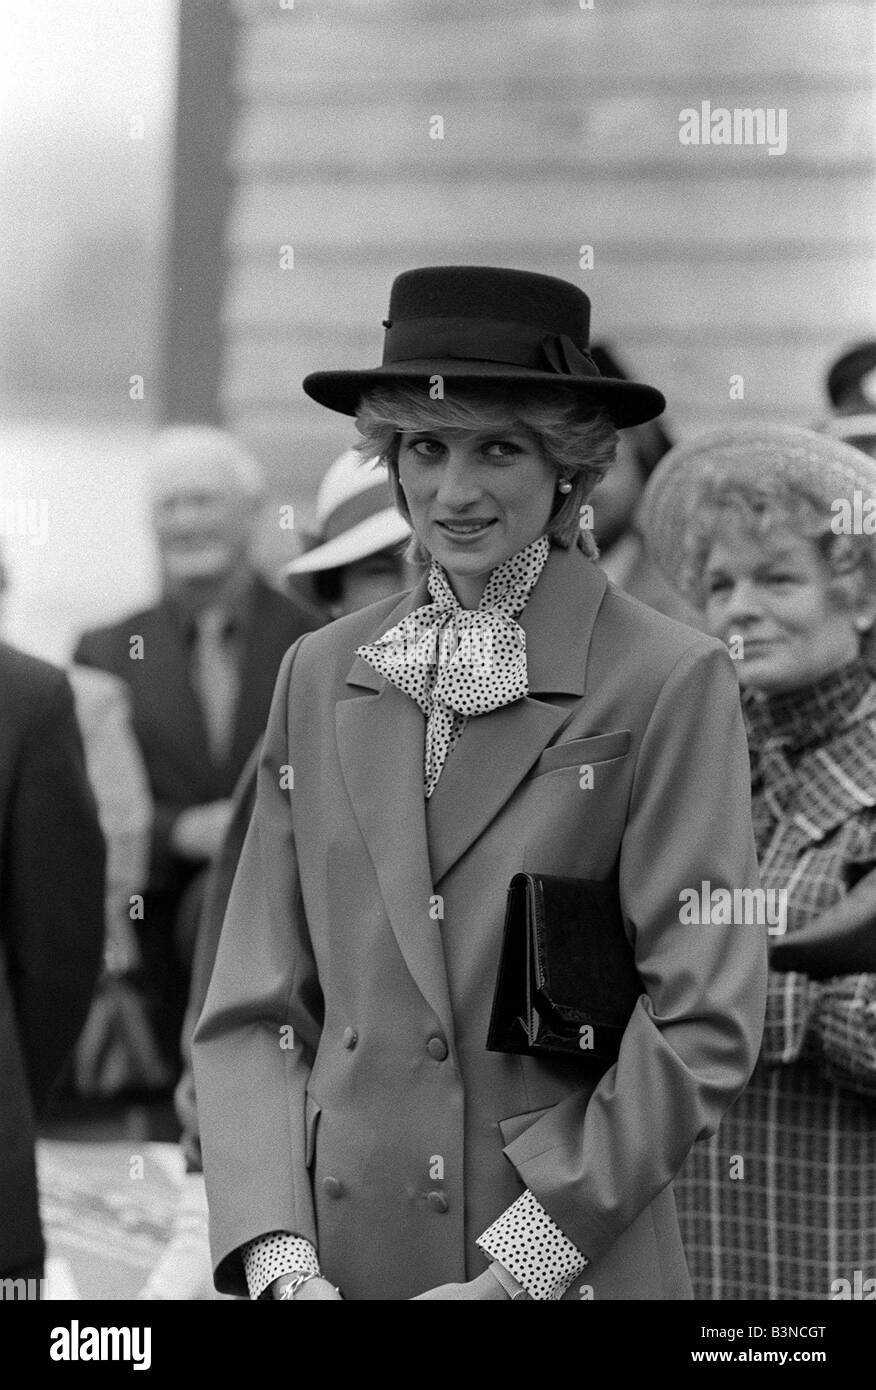 Prince Charles Princess Diana July 1983 Royal Visits Canada Stock Photo ...